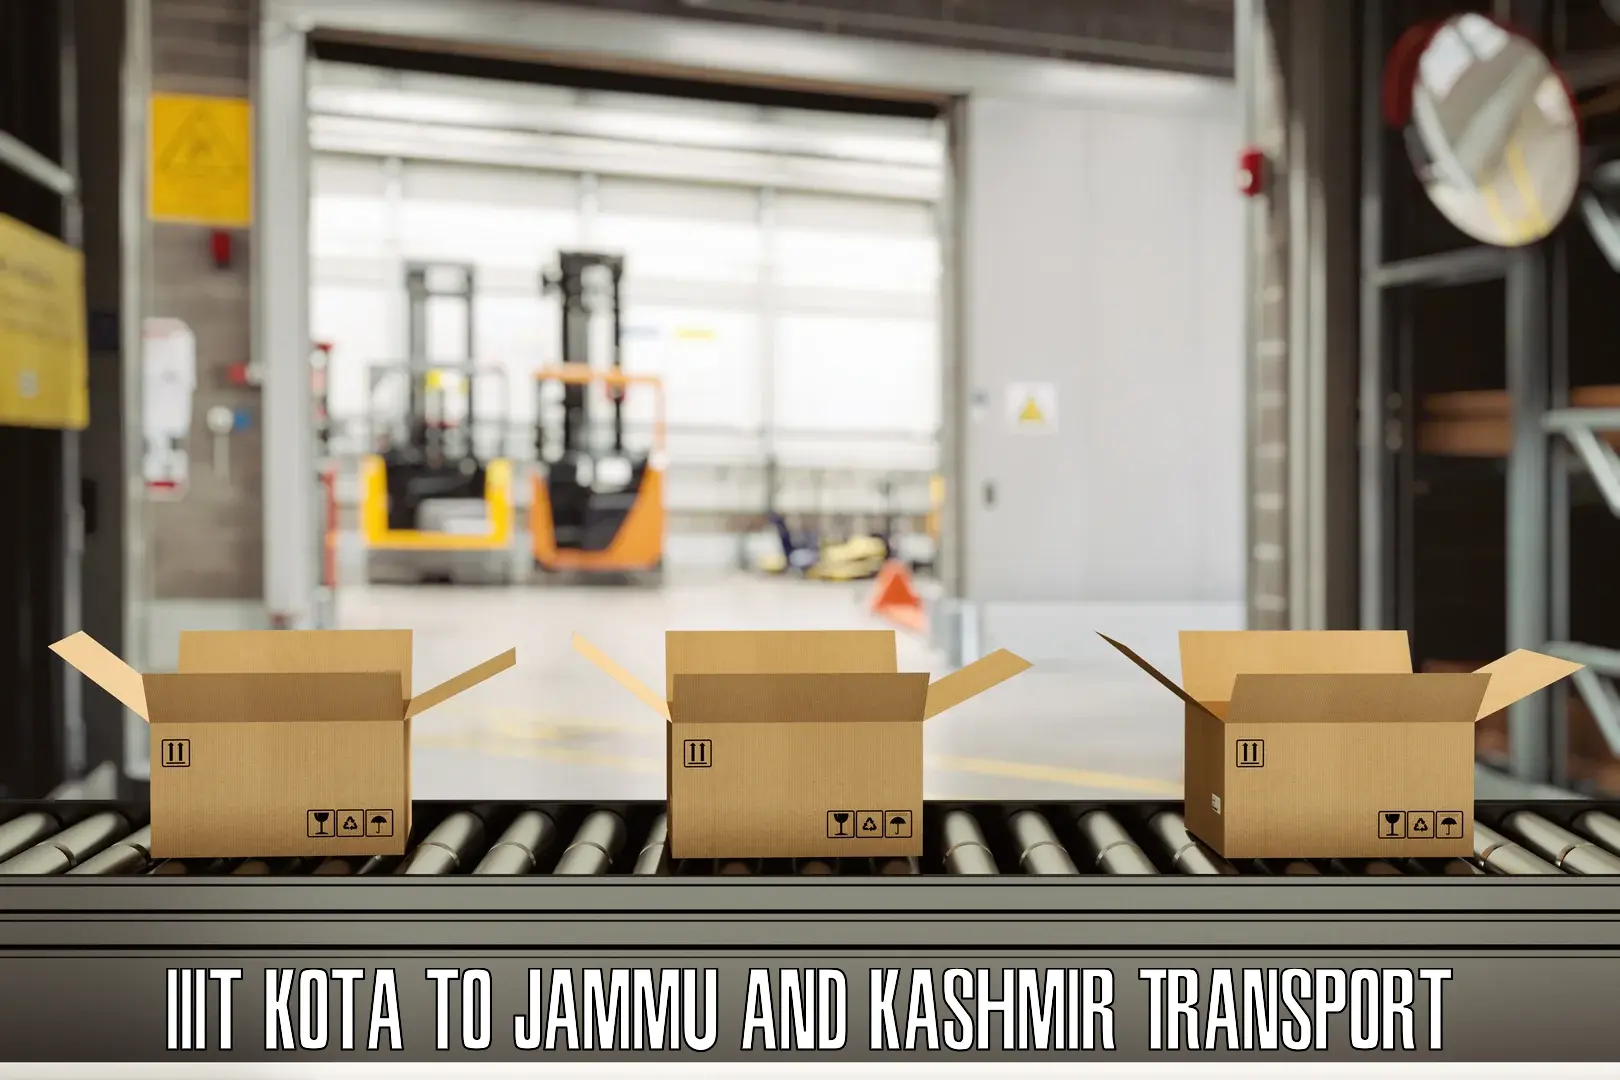 Nearest transport service in IIIT Kota to IIT Jammu